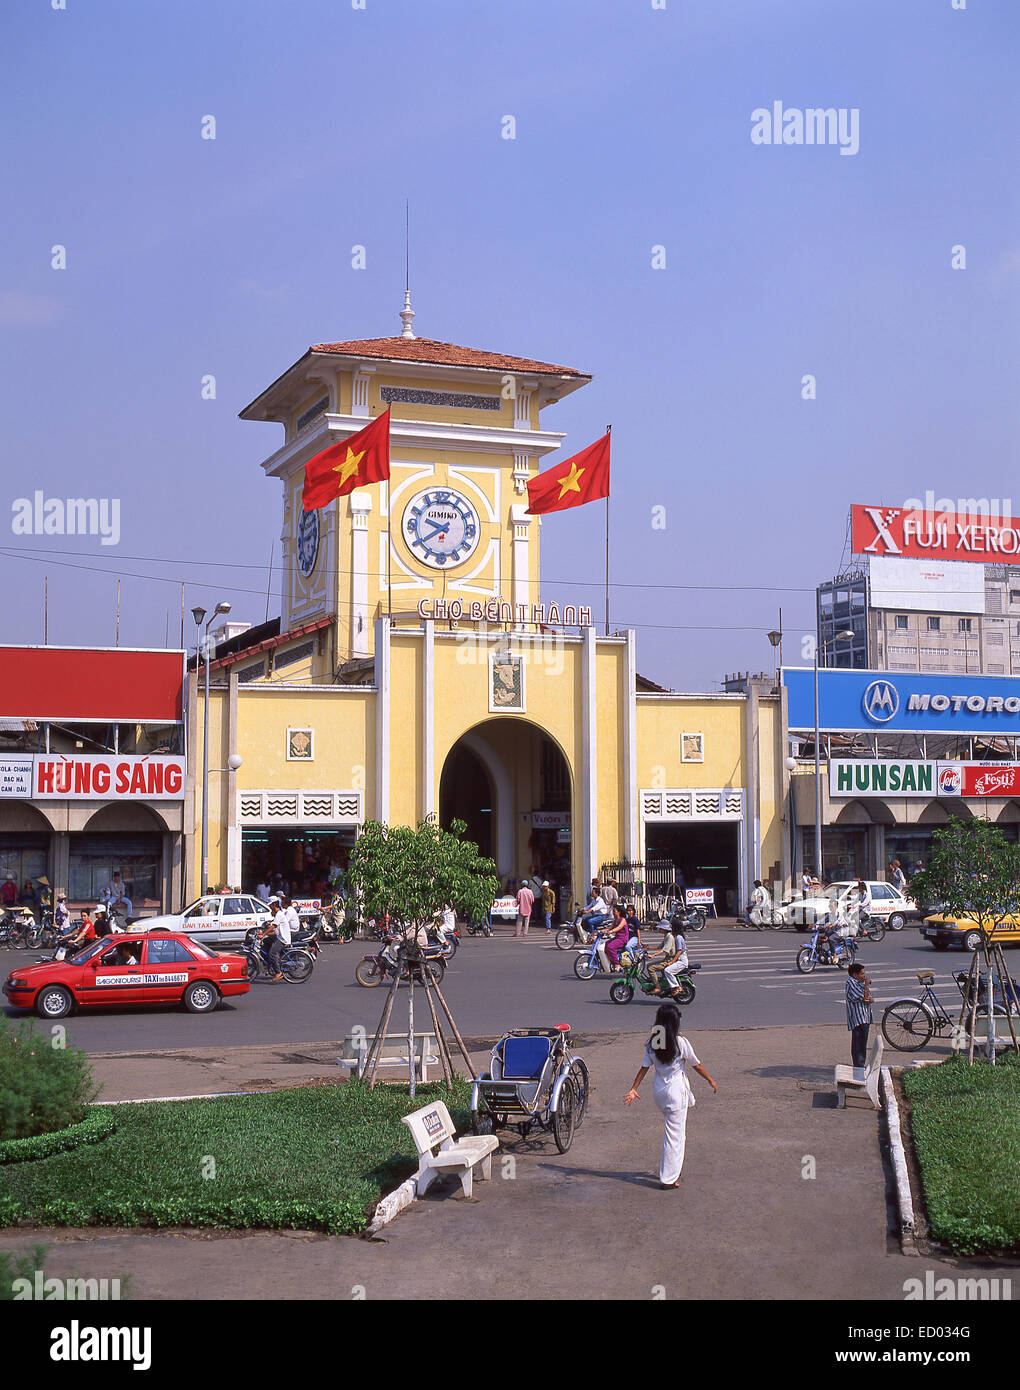 L'entrée du marché, Bình Tây Marché, Cholon, District 6, Ho Chi Minh Ville (Saigon), République socialiste du Vietnam Banque D'Images